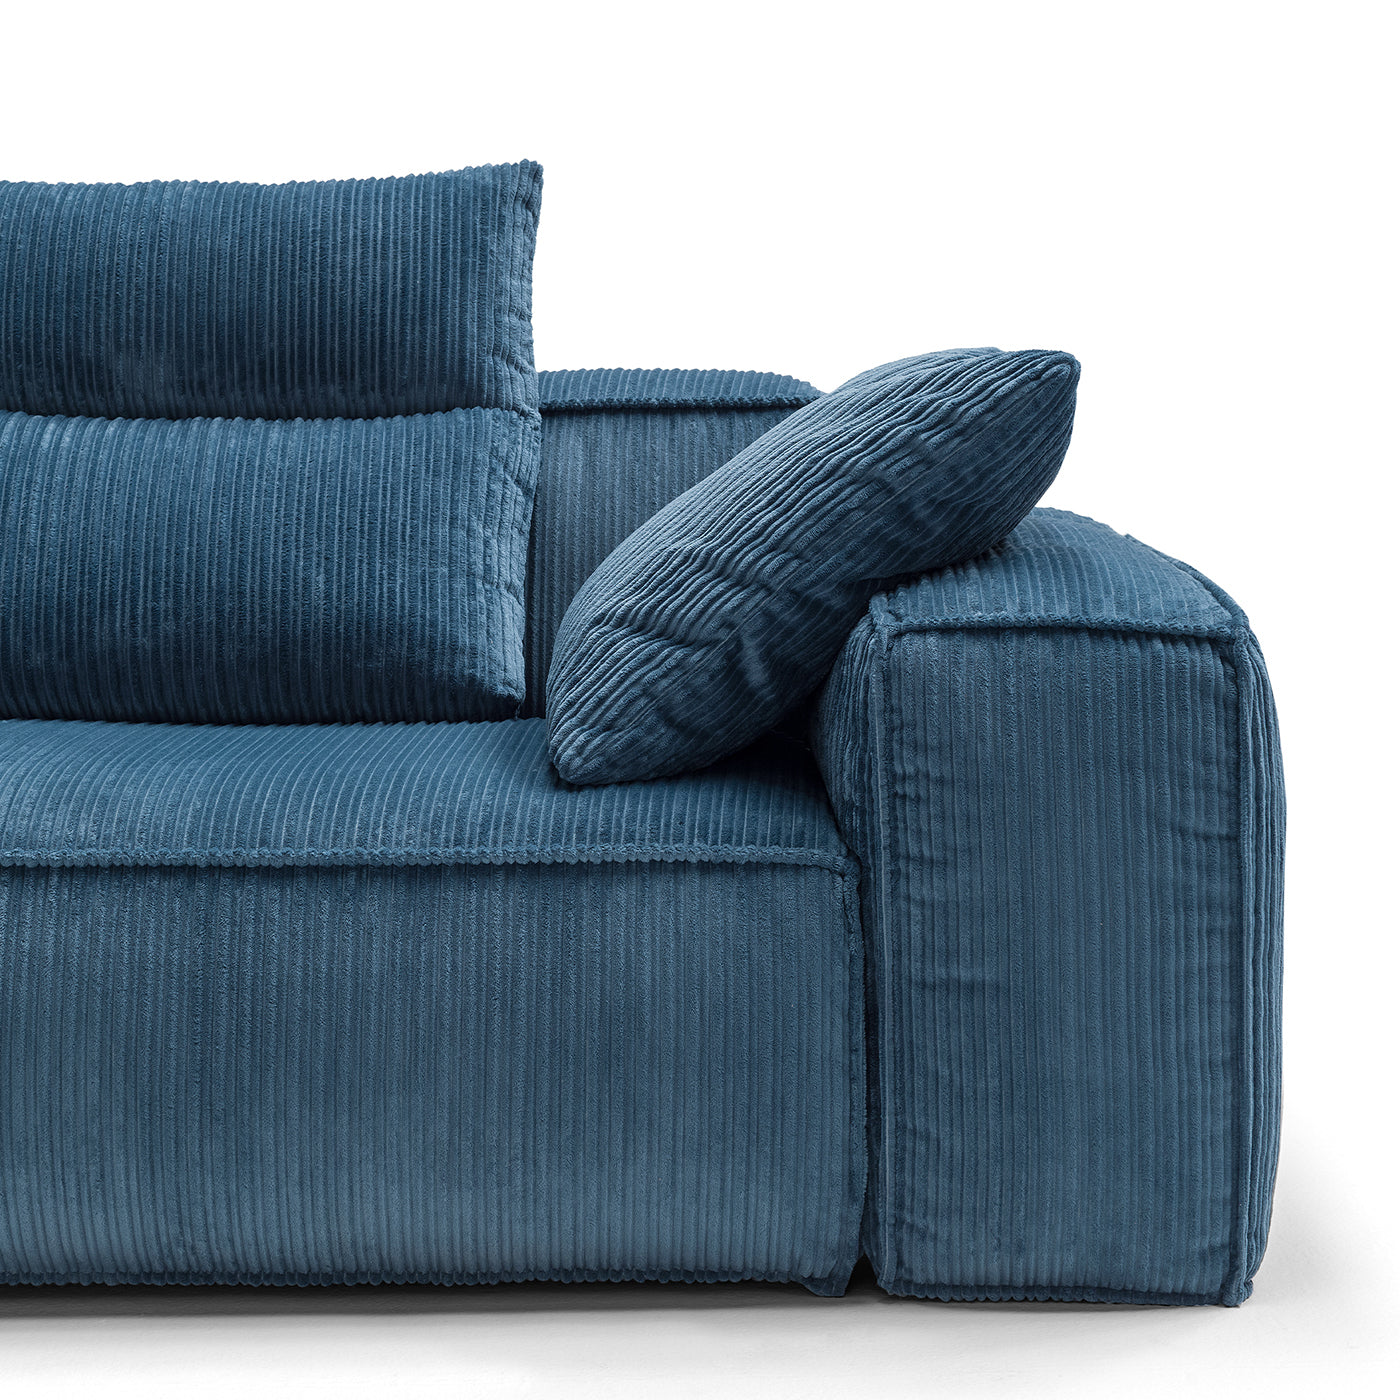 Astor Blue Sofa - Alternative view 3